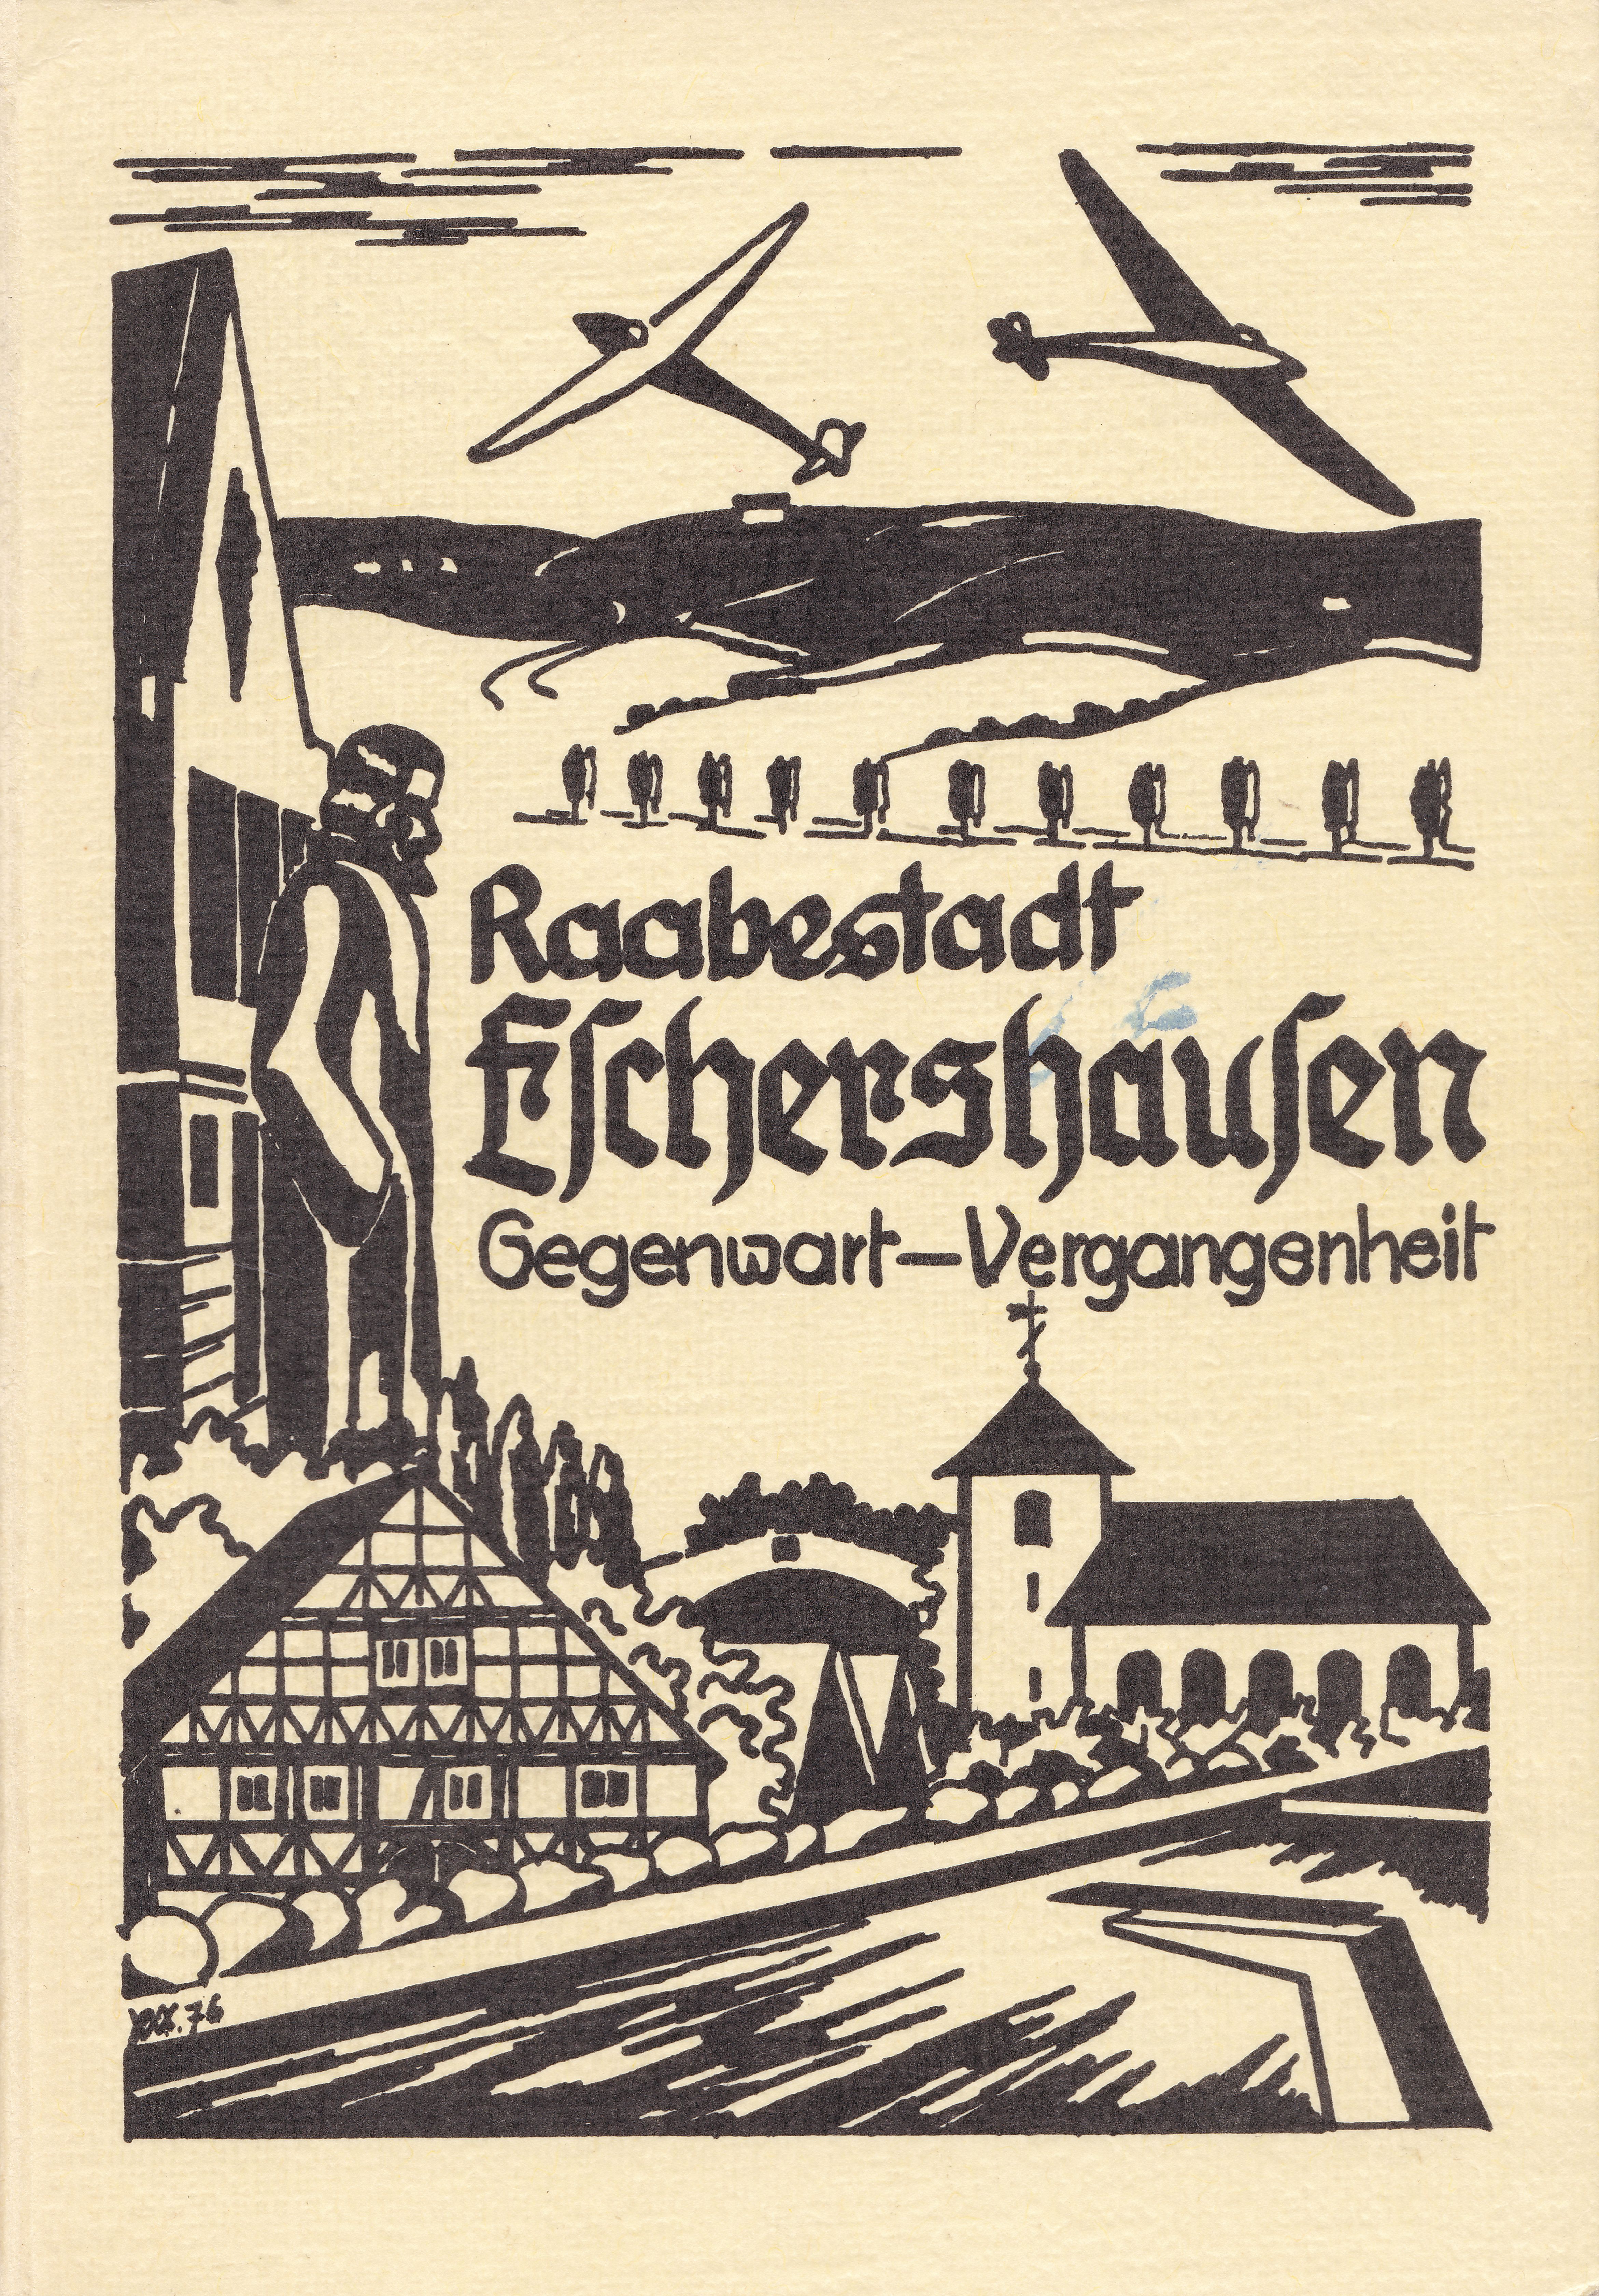 Frontseite des Buchs Raabestadt Eschershausen 1977